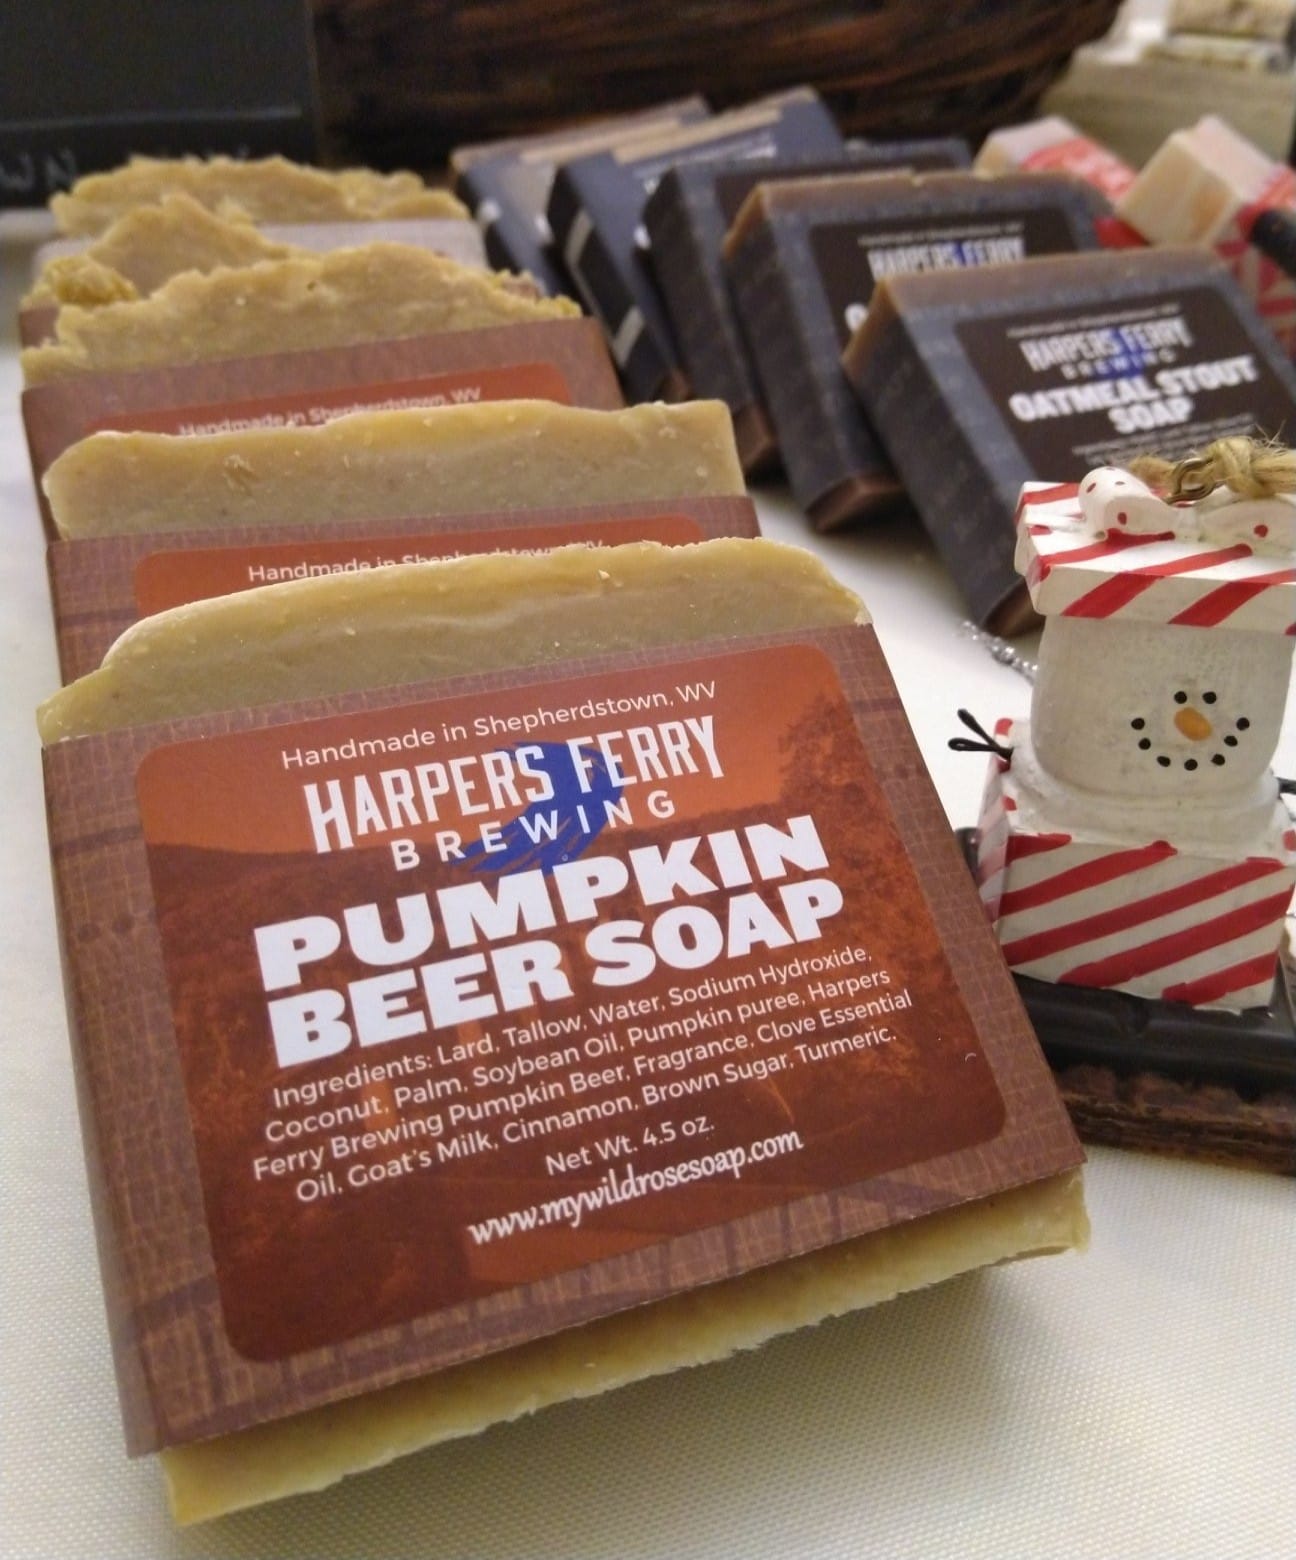 Harpers Ferry Pumpkin Beer Soap